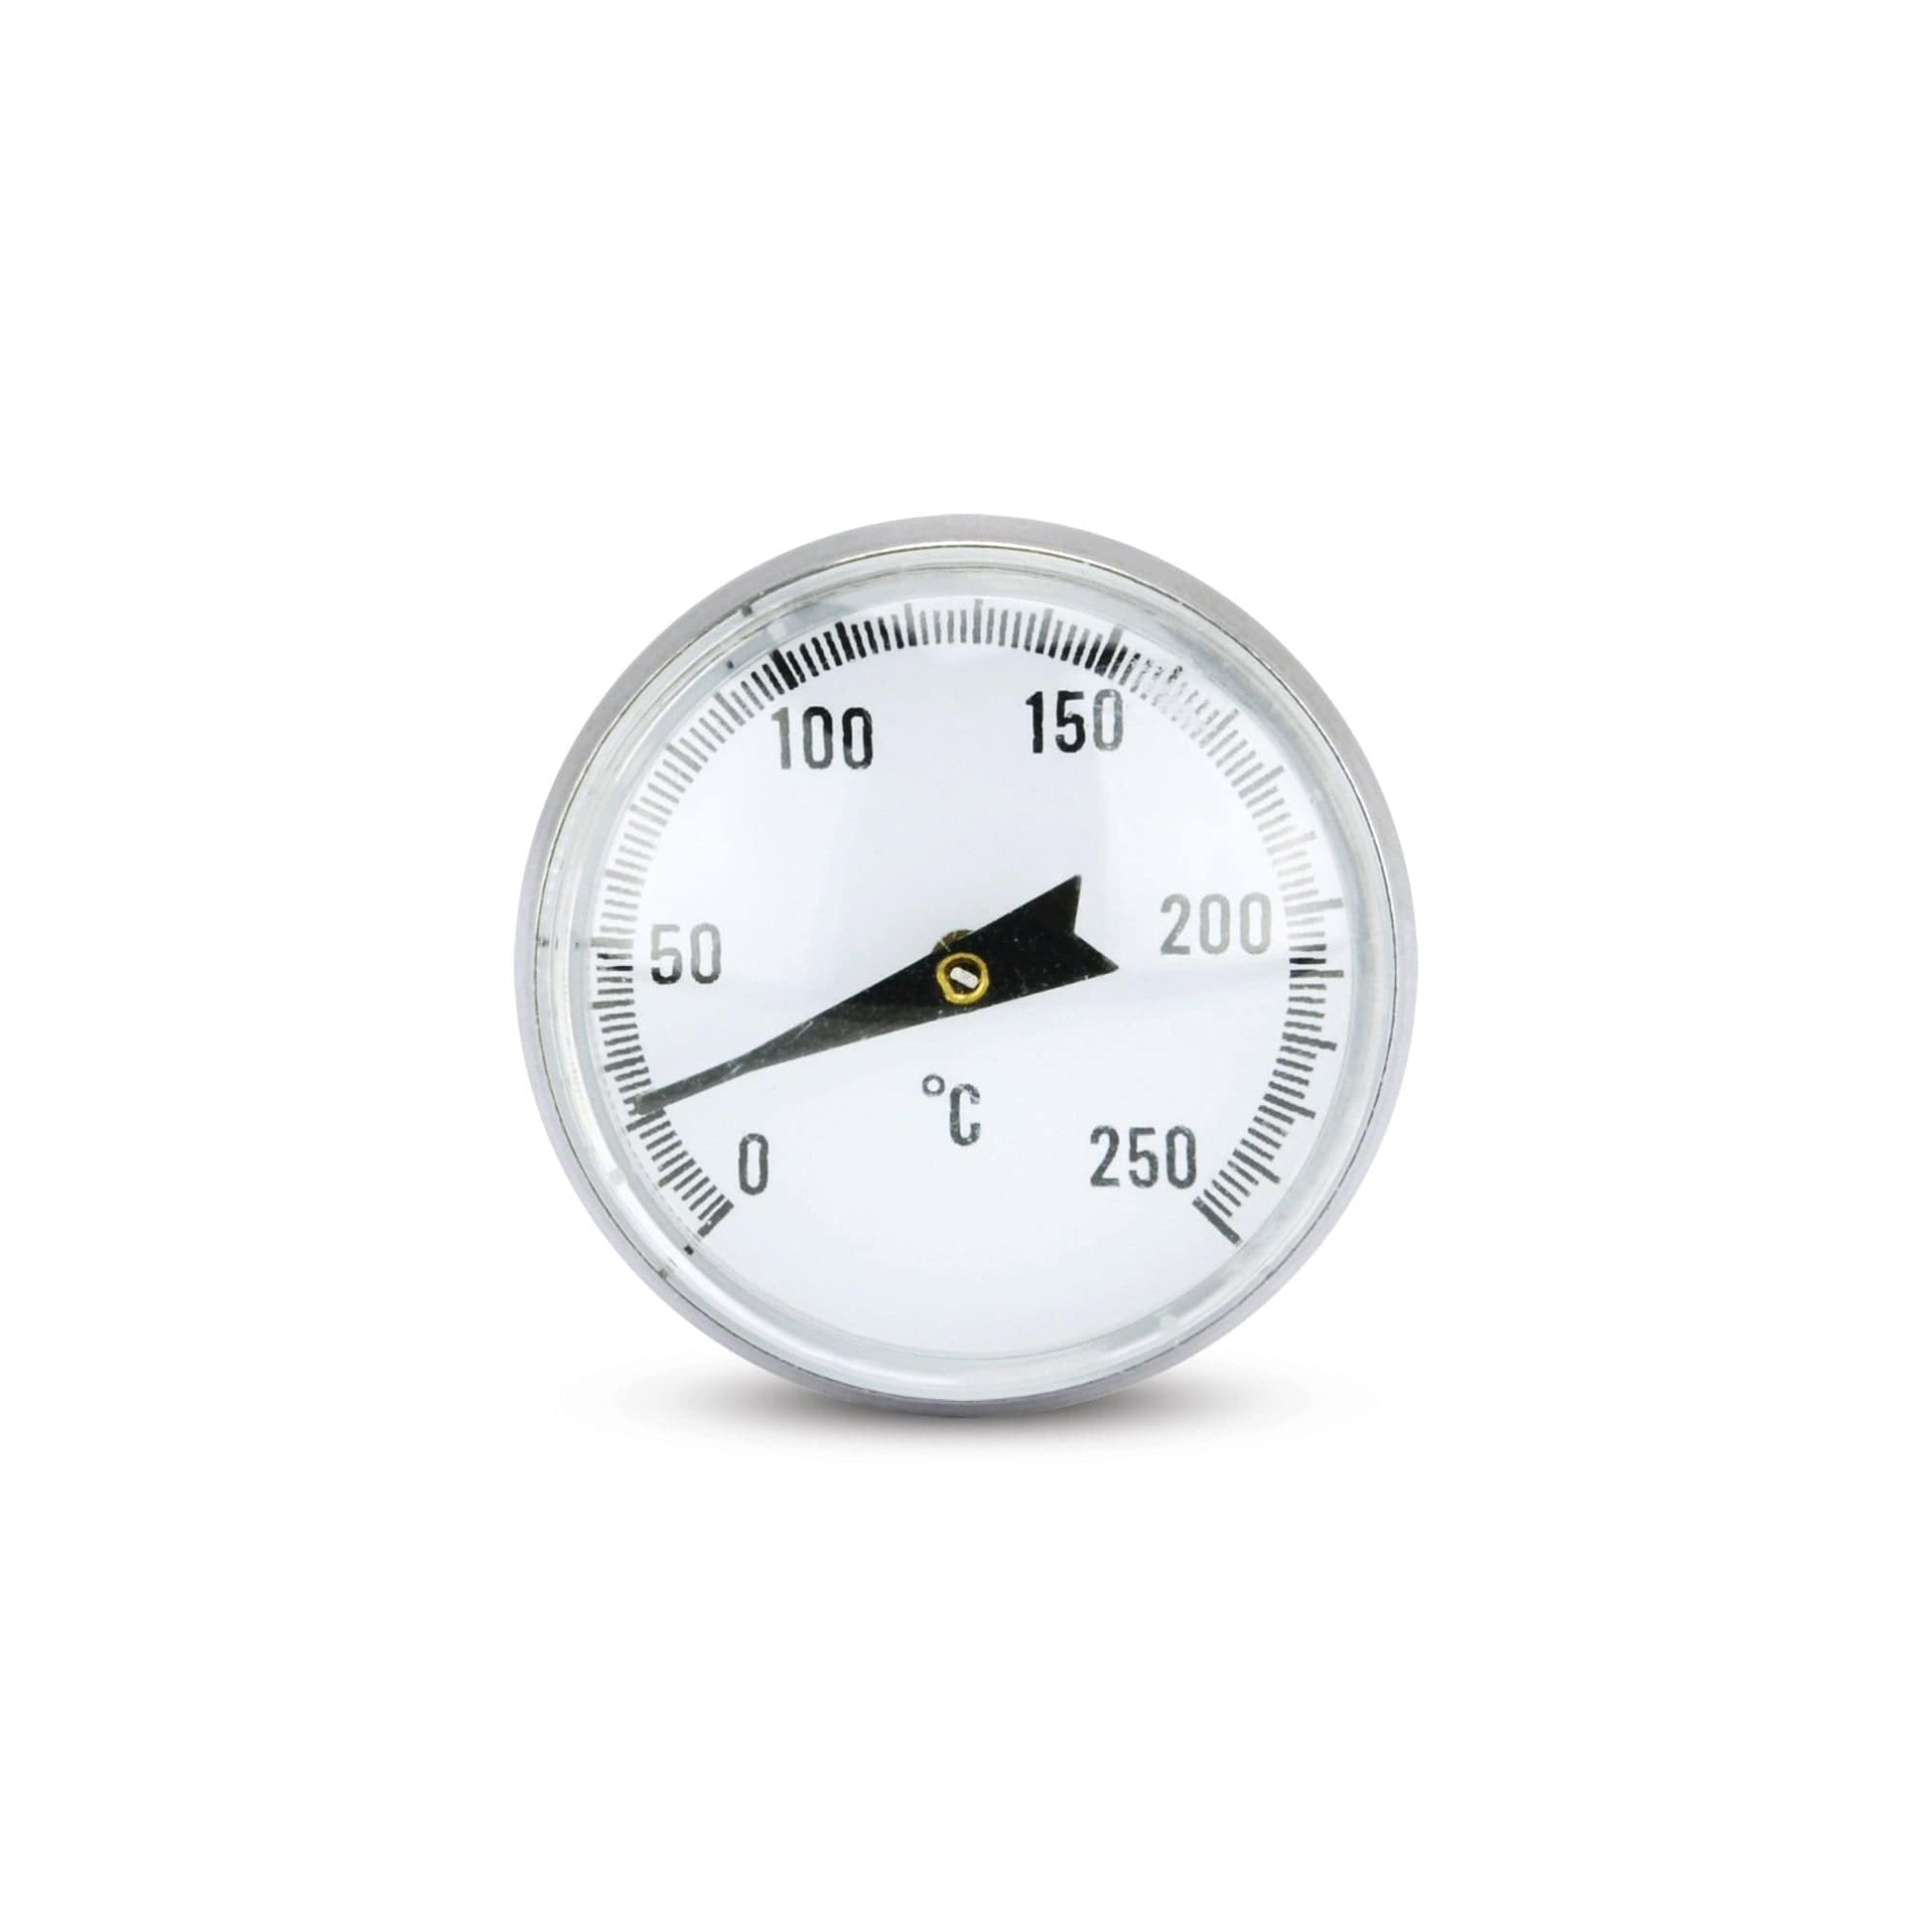 un Thermomètre à sonde à cadran de Thermometre.fr sur fond blanc.